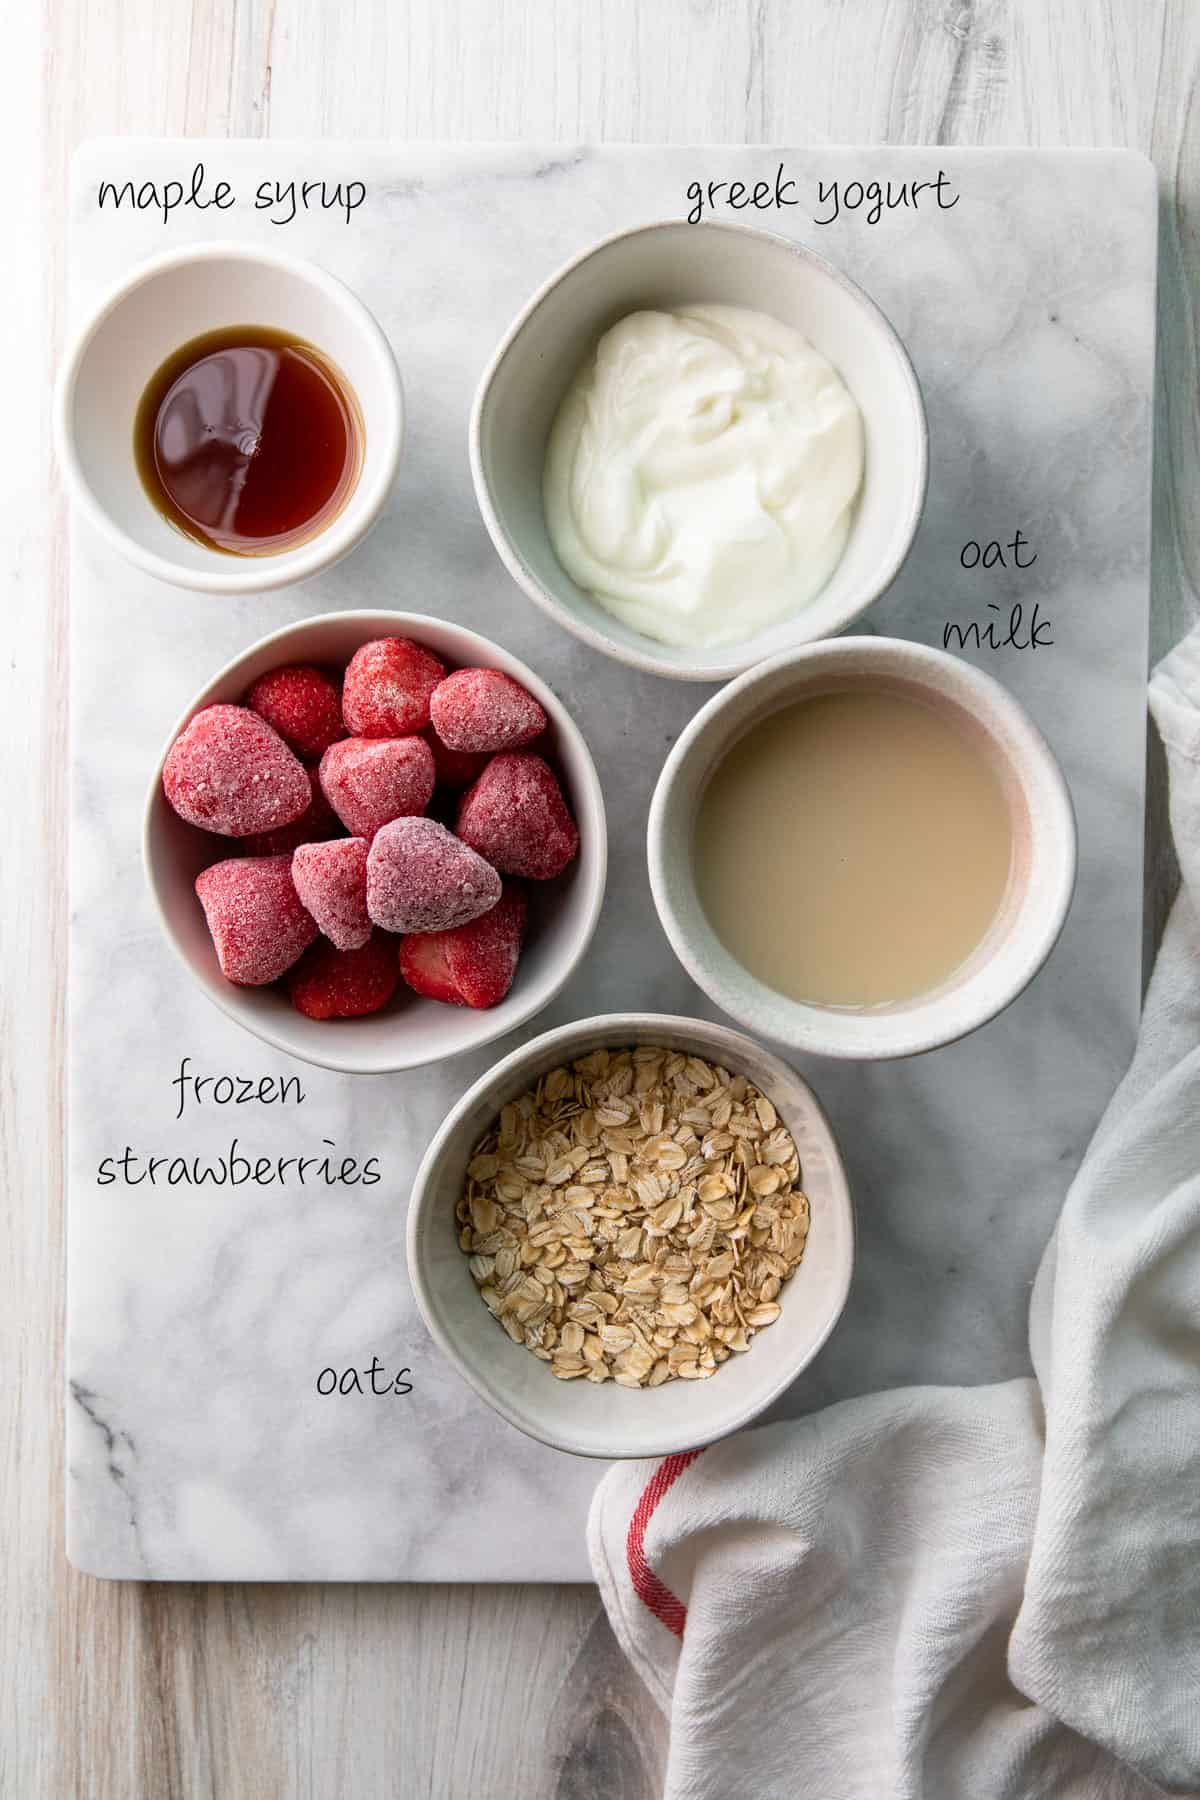 maple syrup, frozen strawberries, yogurt, oat milk, rolled oats